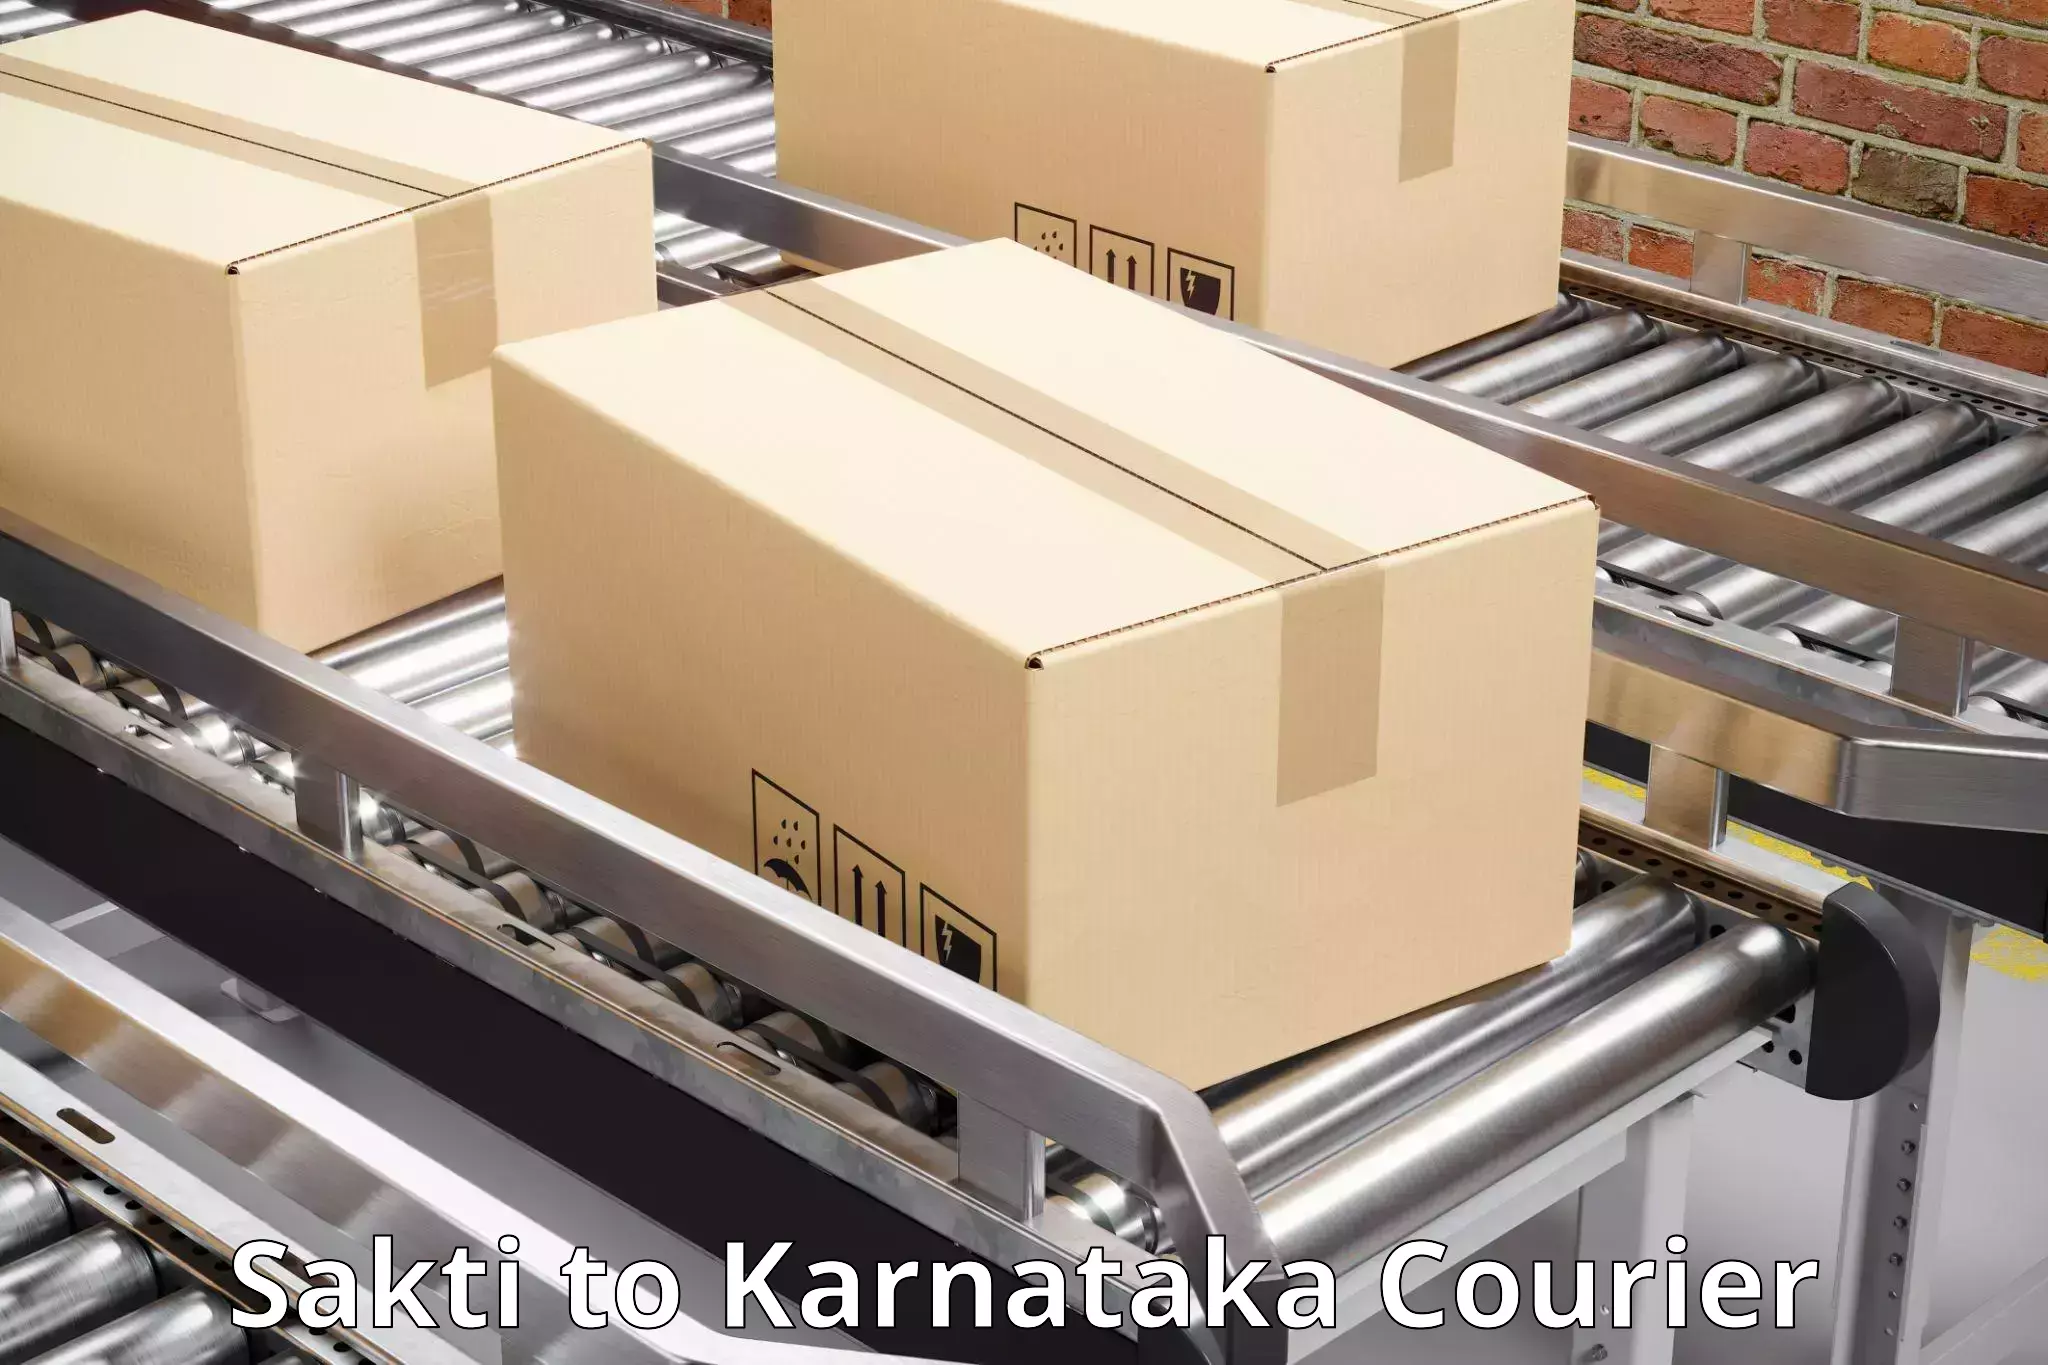 Quality courier services Sakti to Karnataka